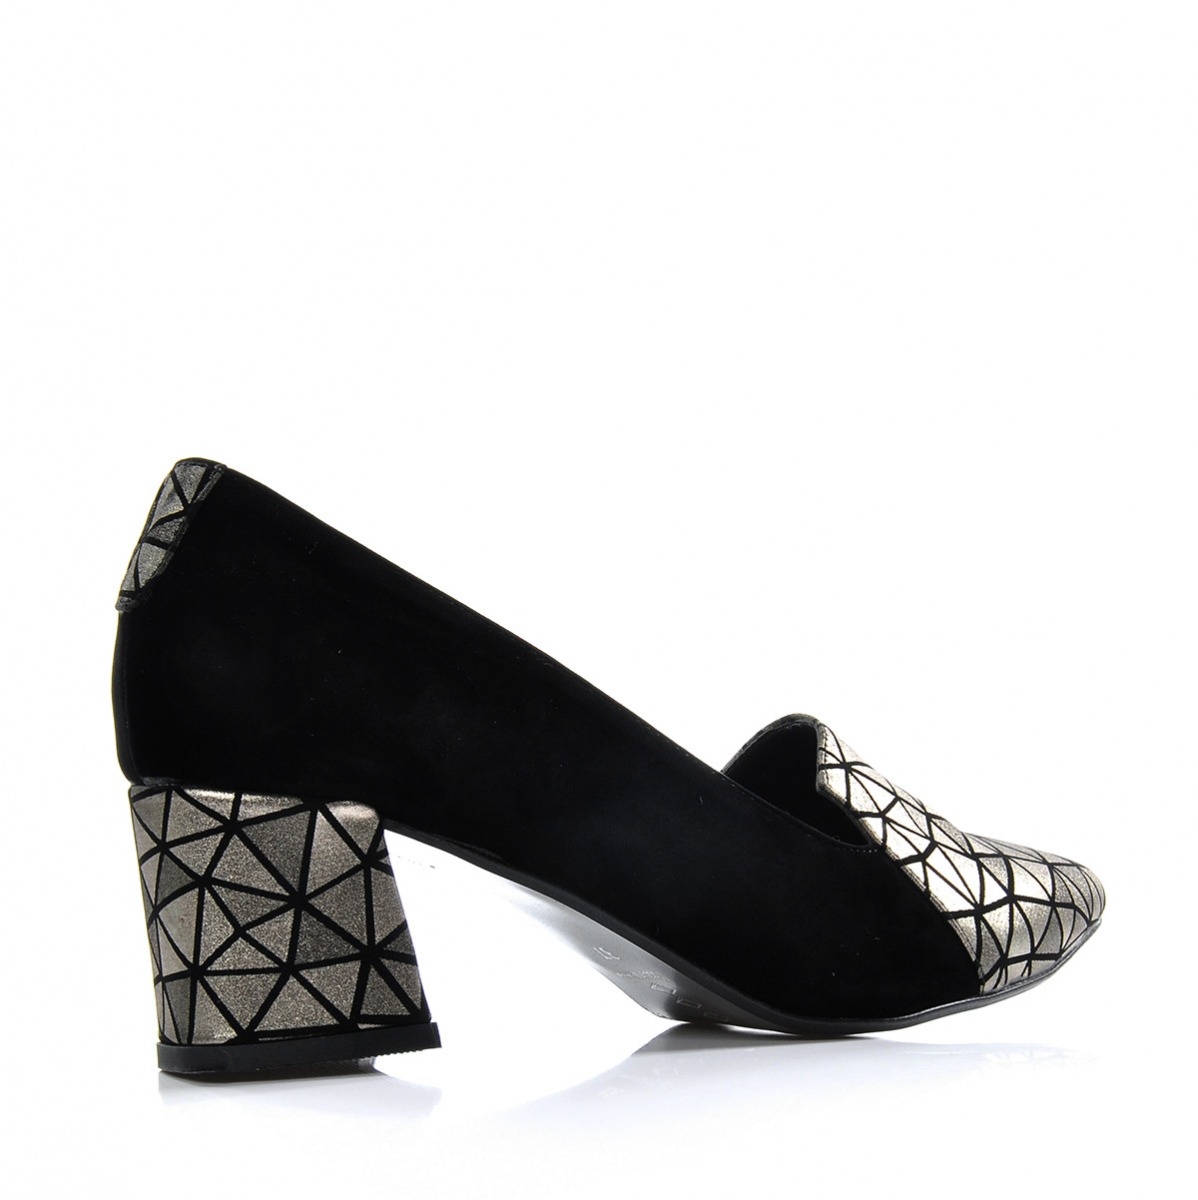 Flo Kadın  Altın Klasik Topuklu Ayakkabı VZN-333Y. 1